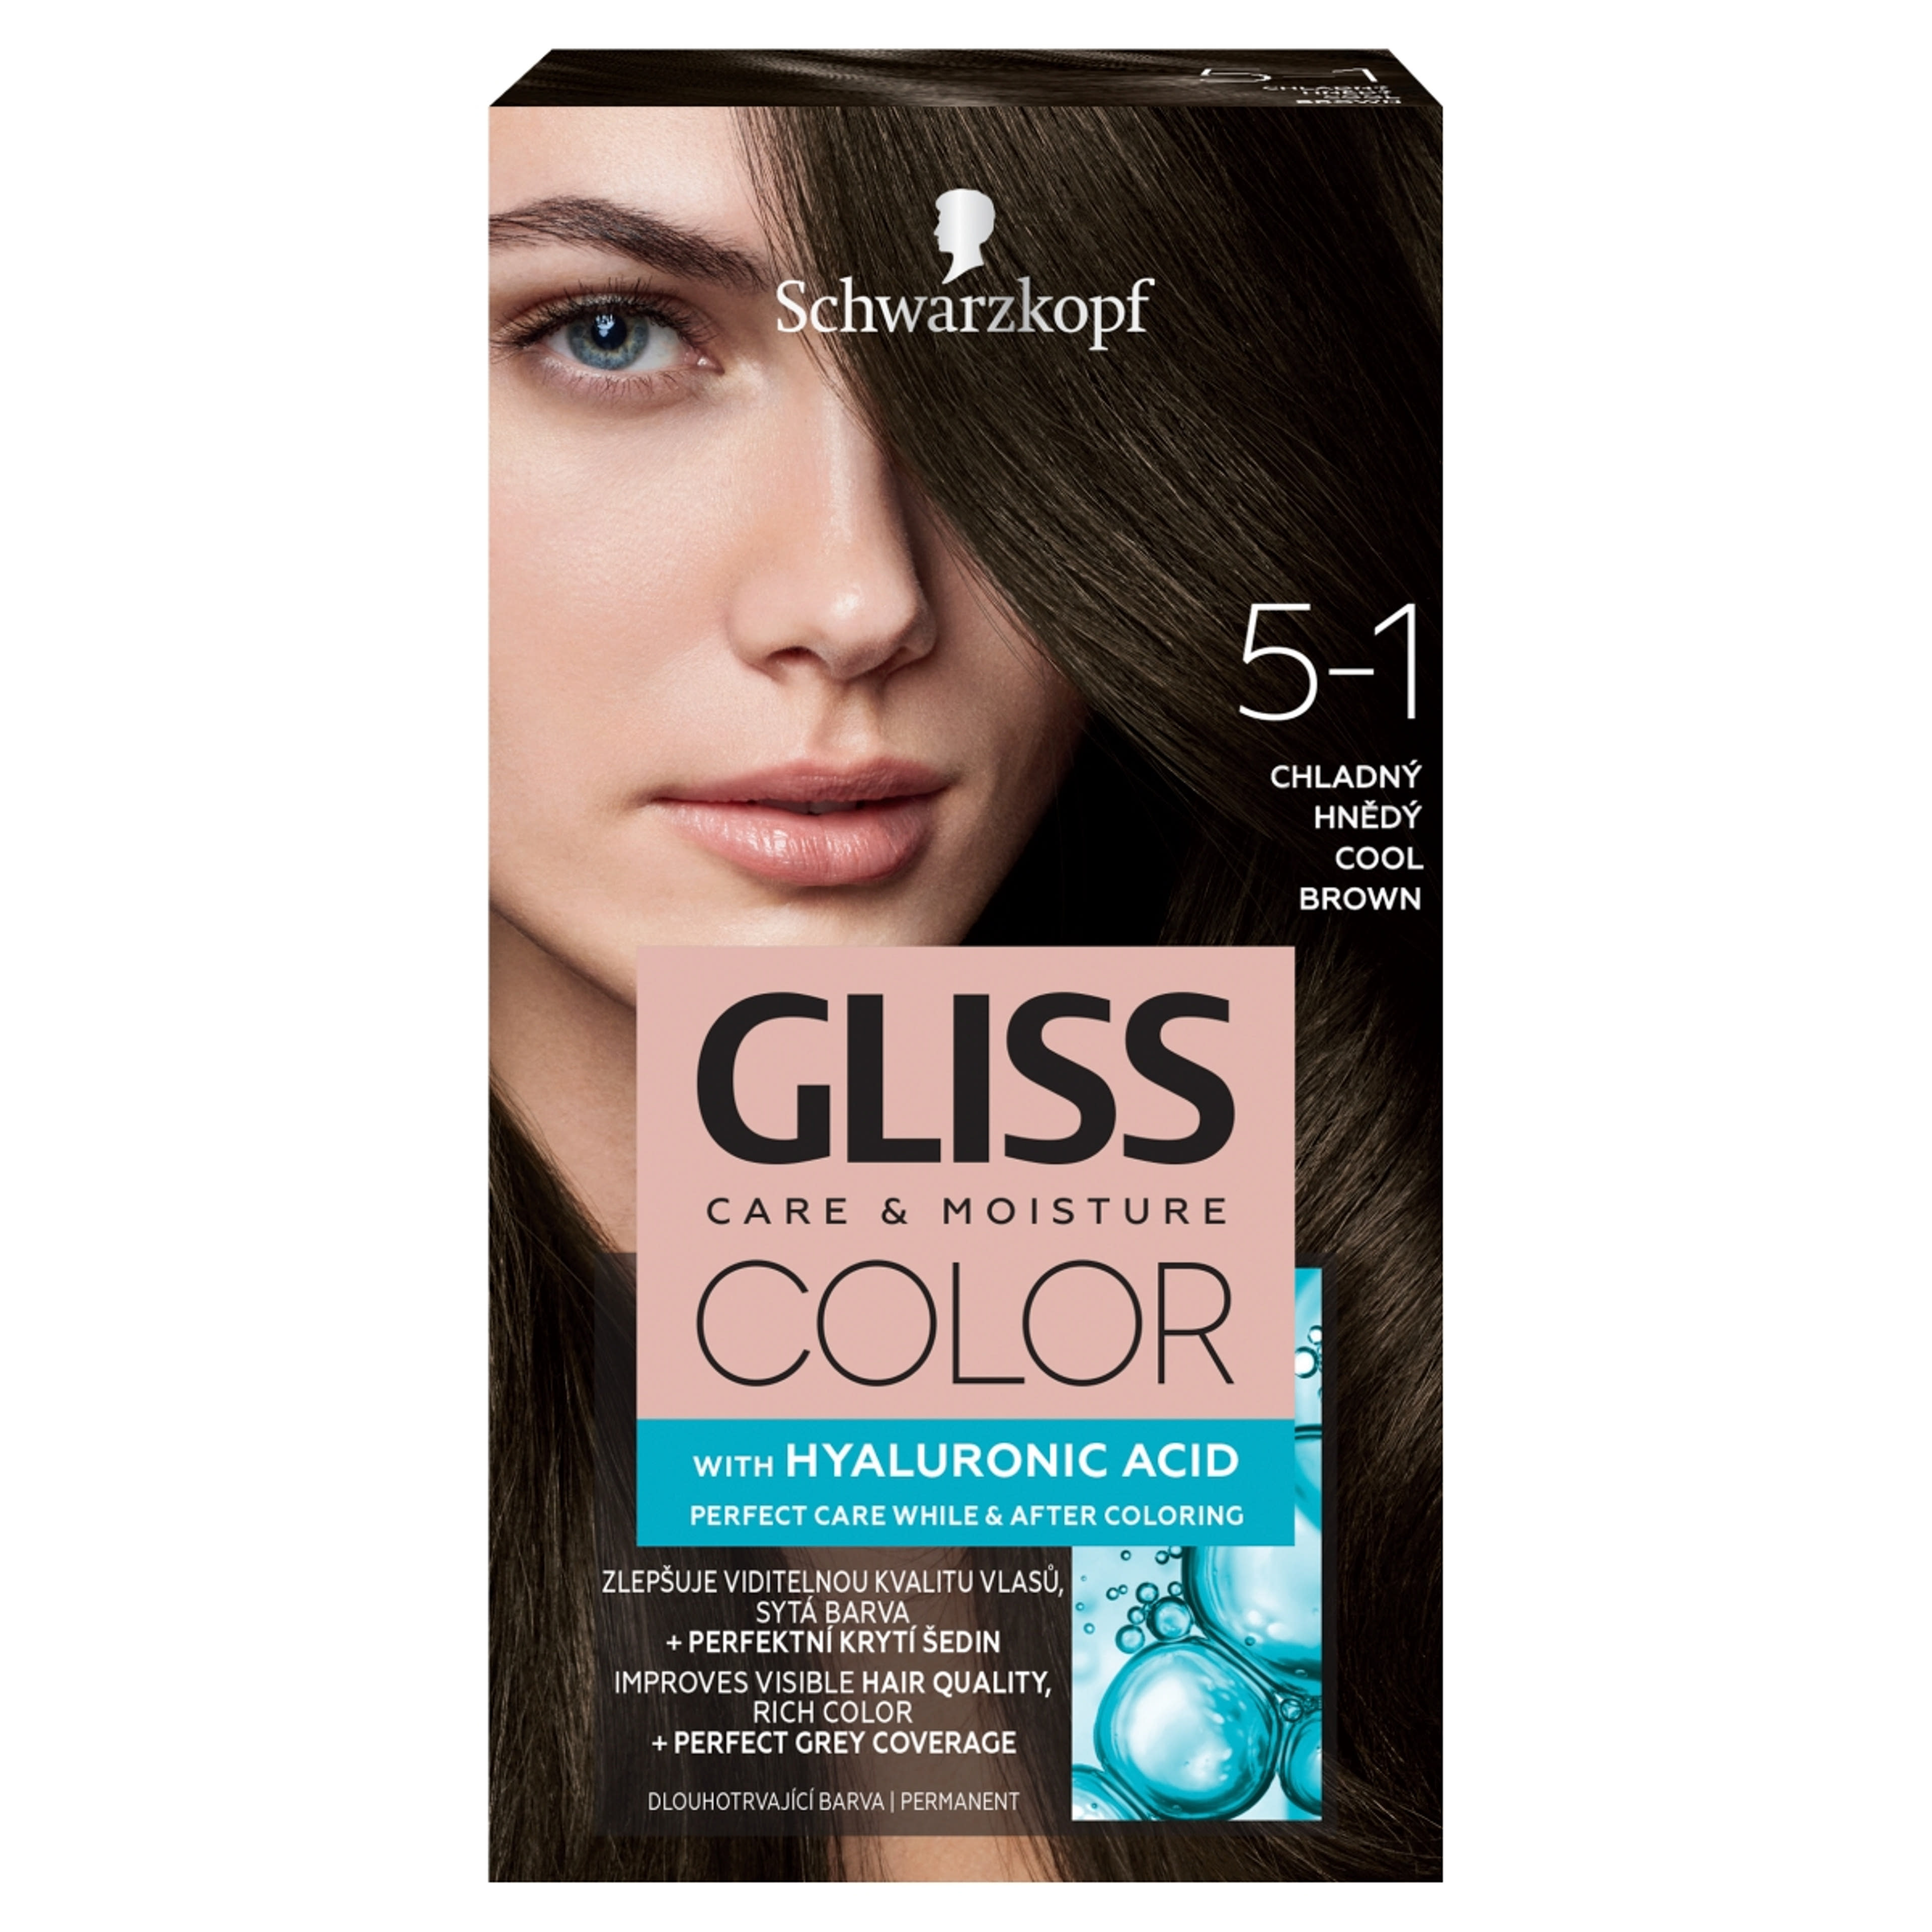 Gliss Color tartós hajfesték 5-1 Hűvösbarna - 1 db